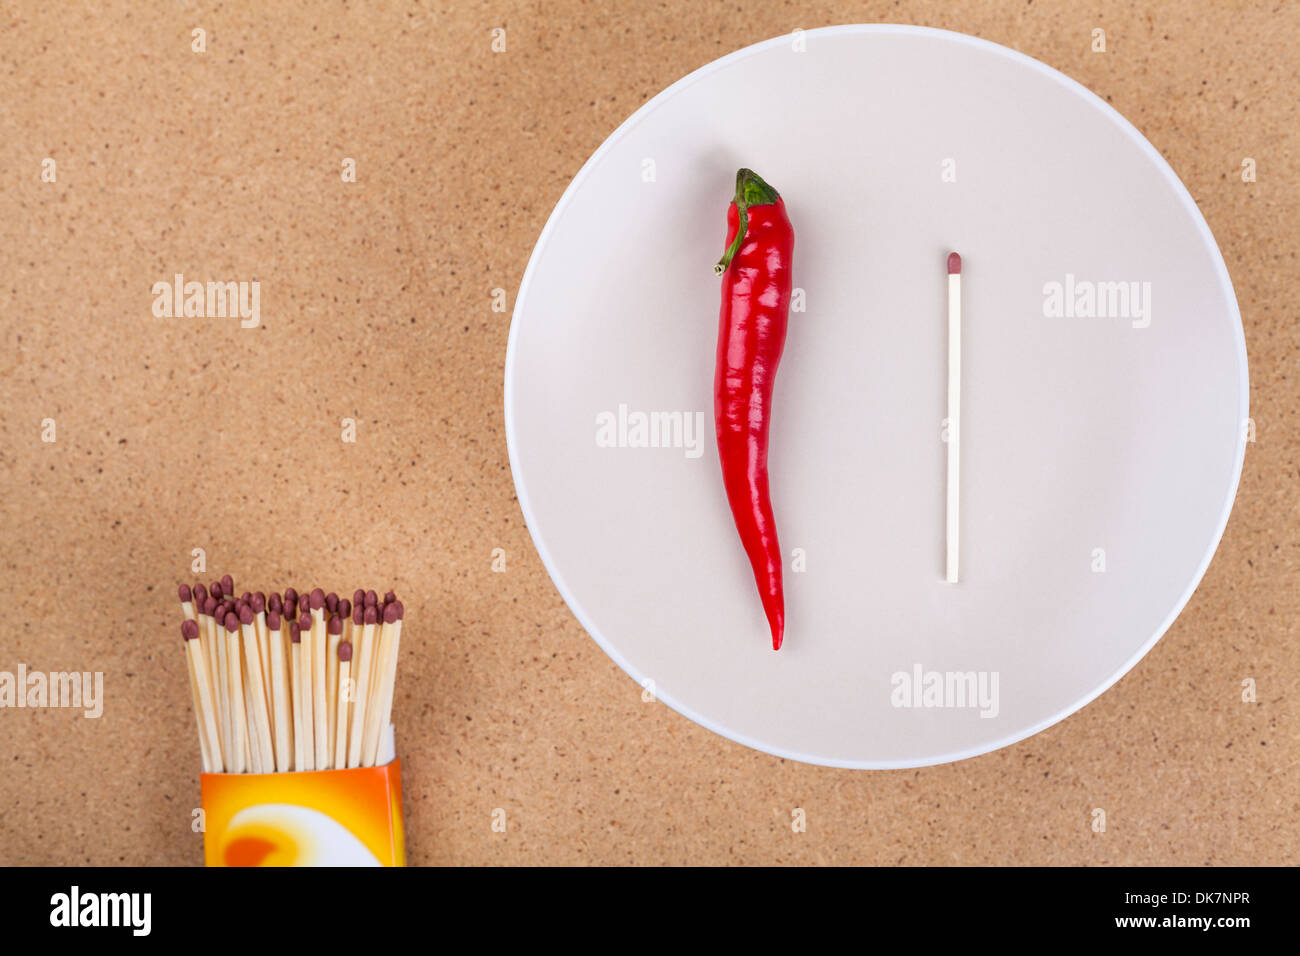 Fresco con placa de red hot chili peppers y coincidencias en la tabla. Foto de stock